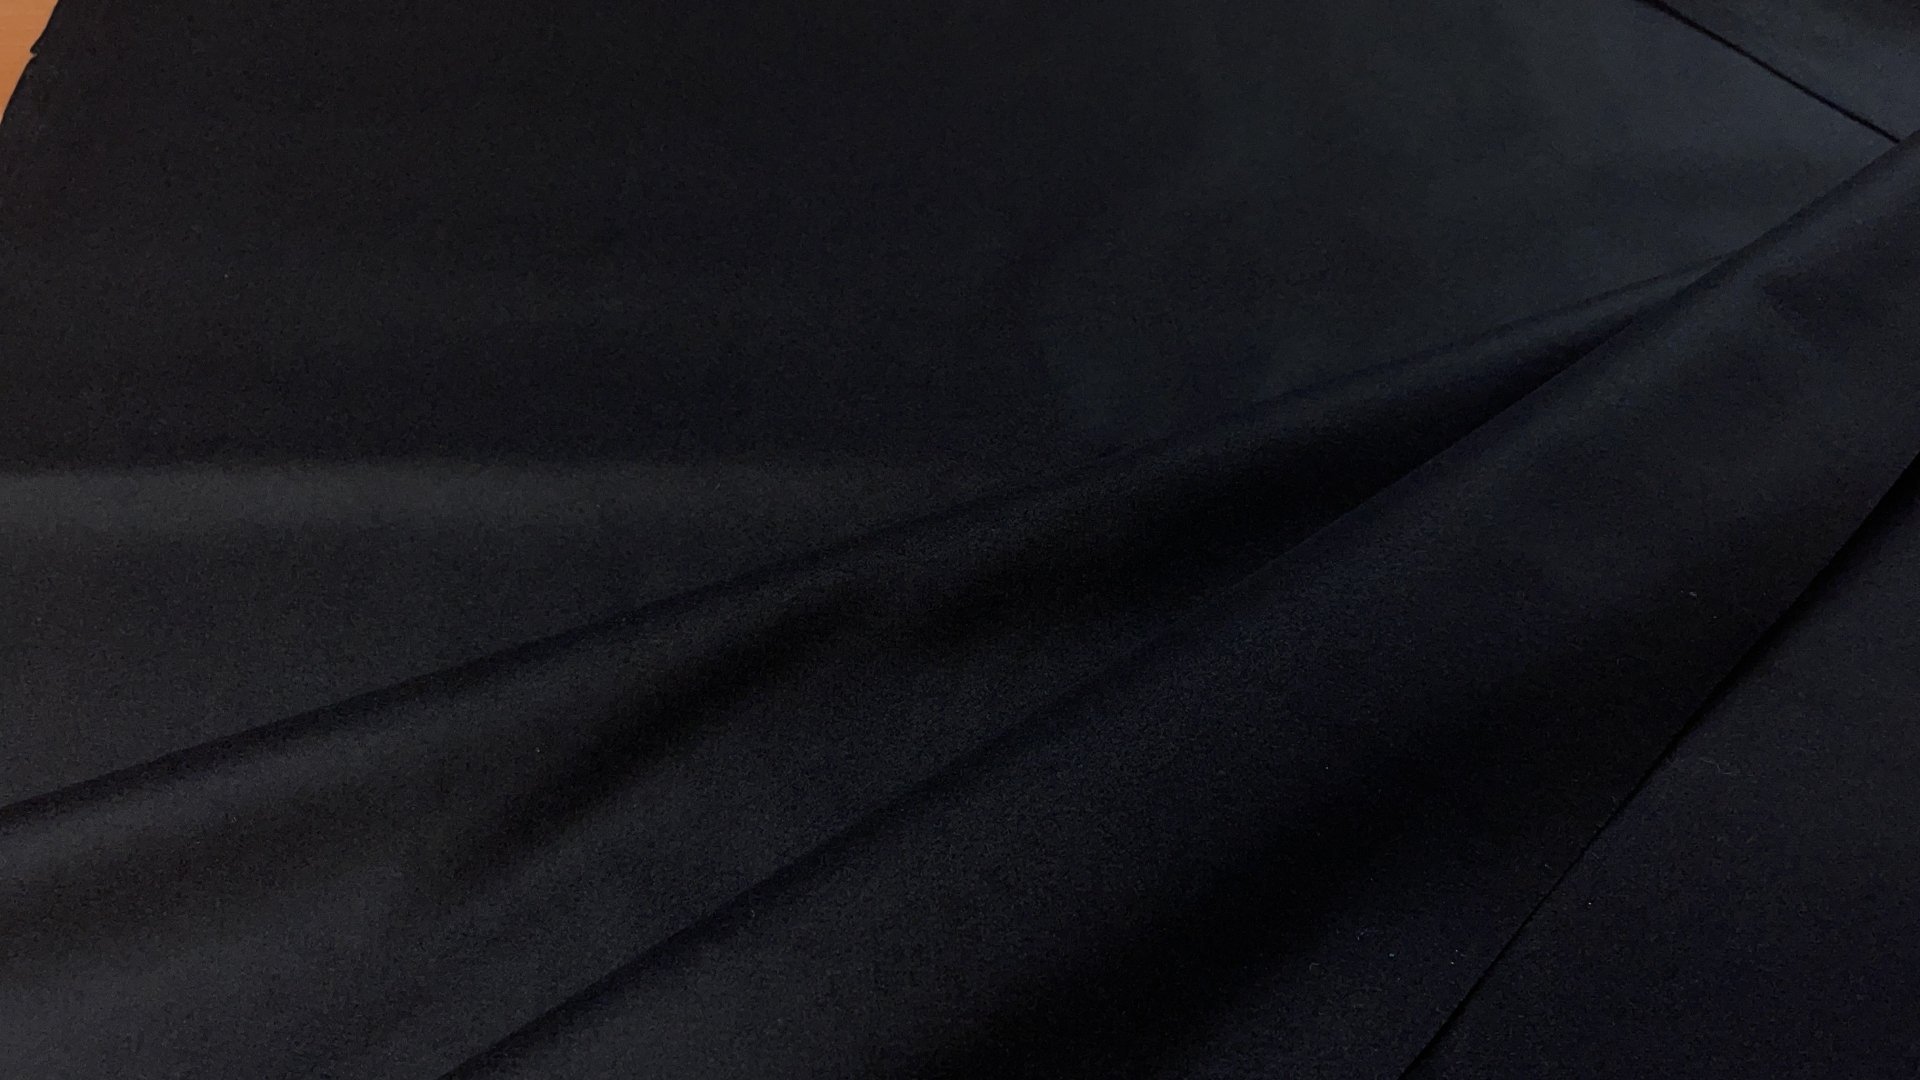 Черное пальтово-костюмное полотно с выраженным лоском. В составе шерсть высочайшего качества Вирджиния. Плотность 590 гр п/м. Подойдет для пошива теплого зимнего жакета или юбки, а также для облегченного пальто на теплую весну.